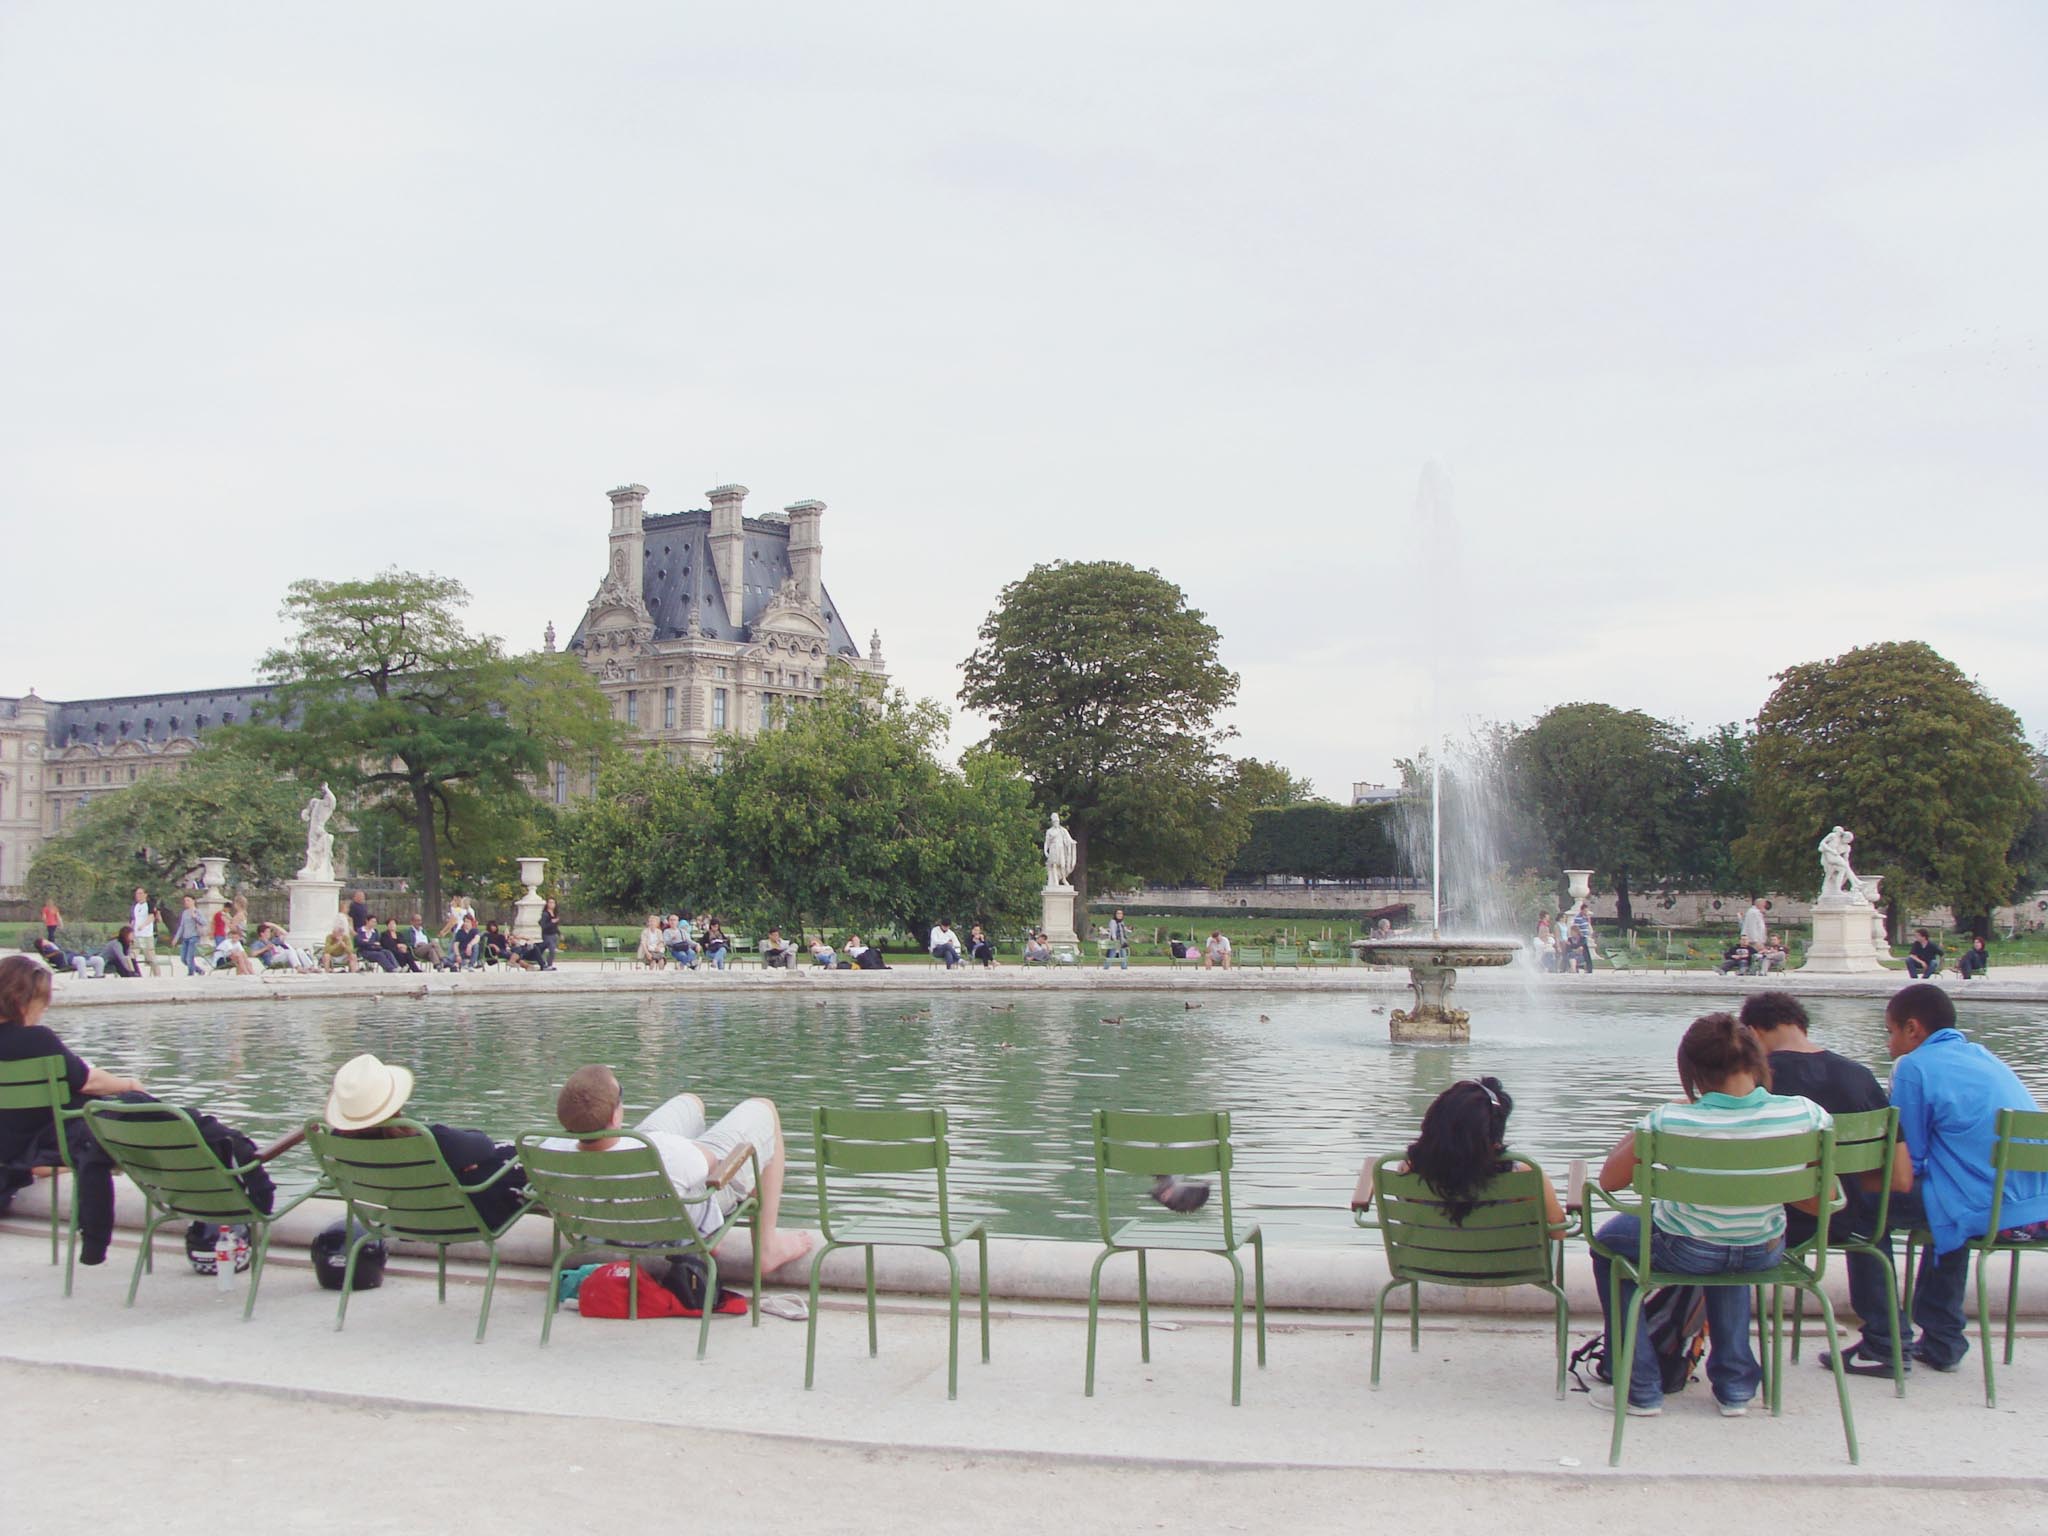 El Jardin des Tuileries en París o el mejor croque-monsieur del mundo mundial/The Jardin des Tuileries in Paris or the best croque-monsieur ever